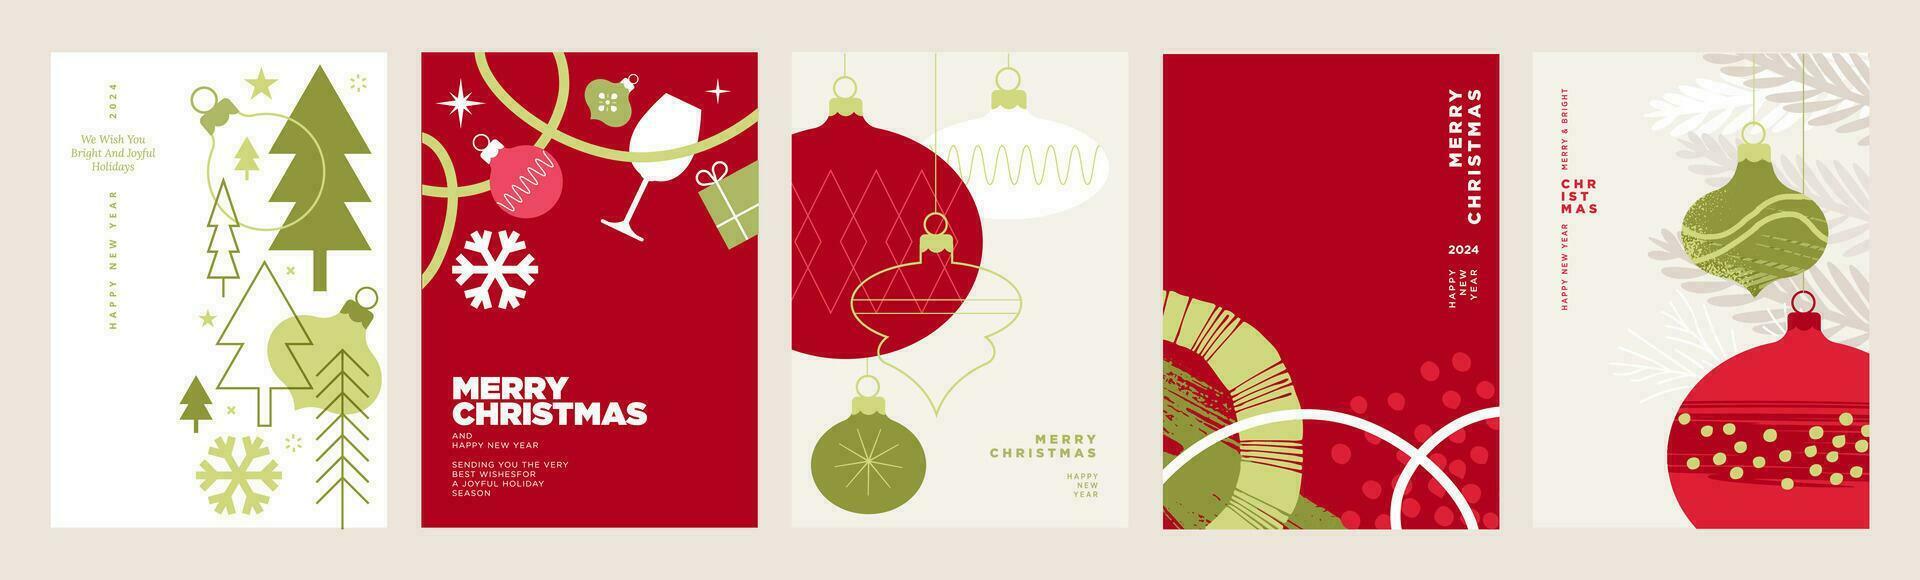 vrolijk Kerstmis en gelukkig nieuw jaar groet kaarten set. vector illustratie concepten voor achtergrond, groet kaart, partij uitnodiging kaart, website banier, sociaal media banier, afzet materiaal.